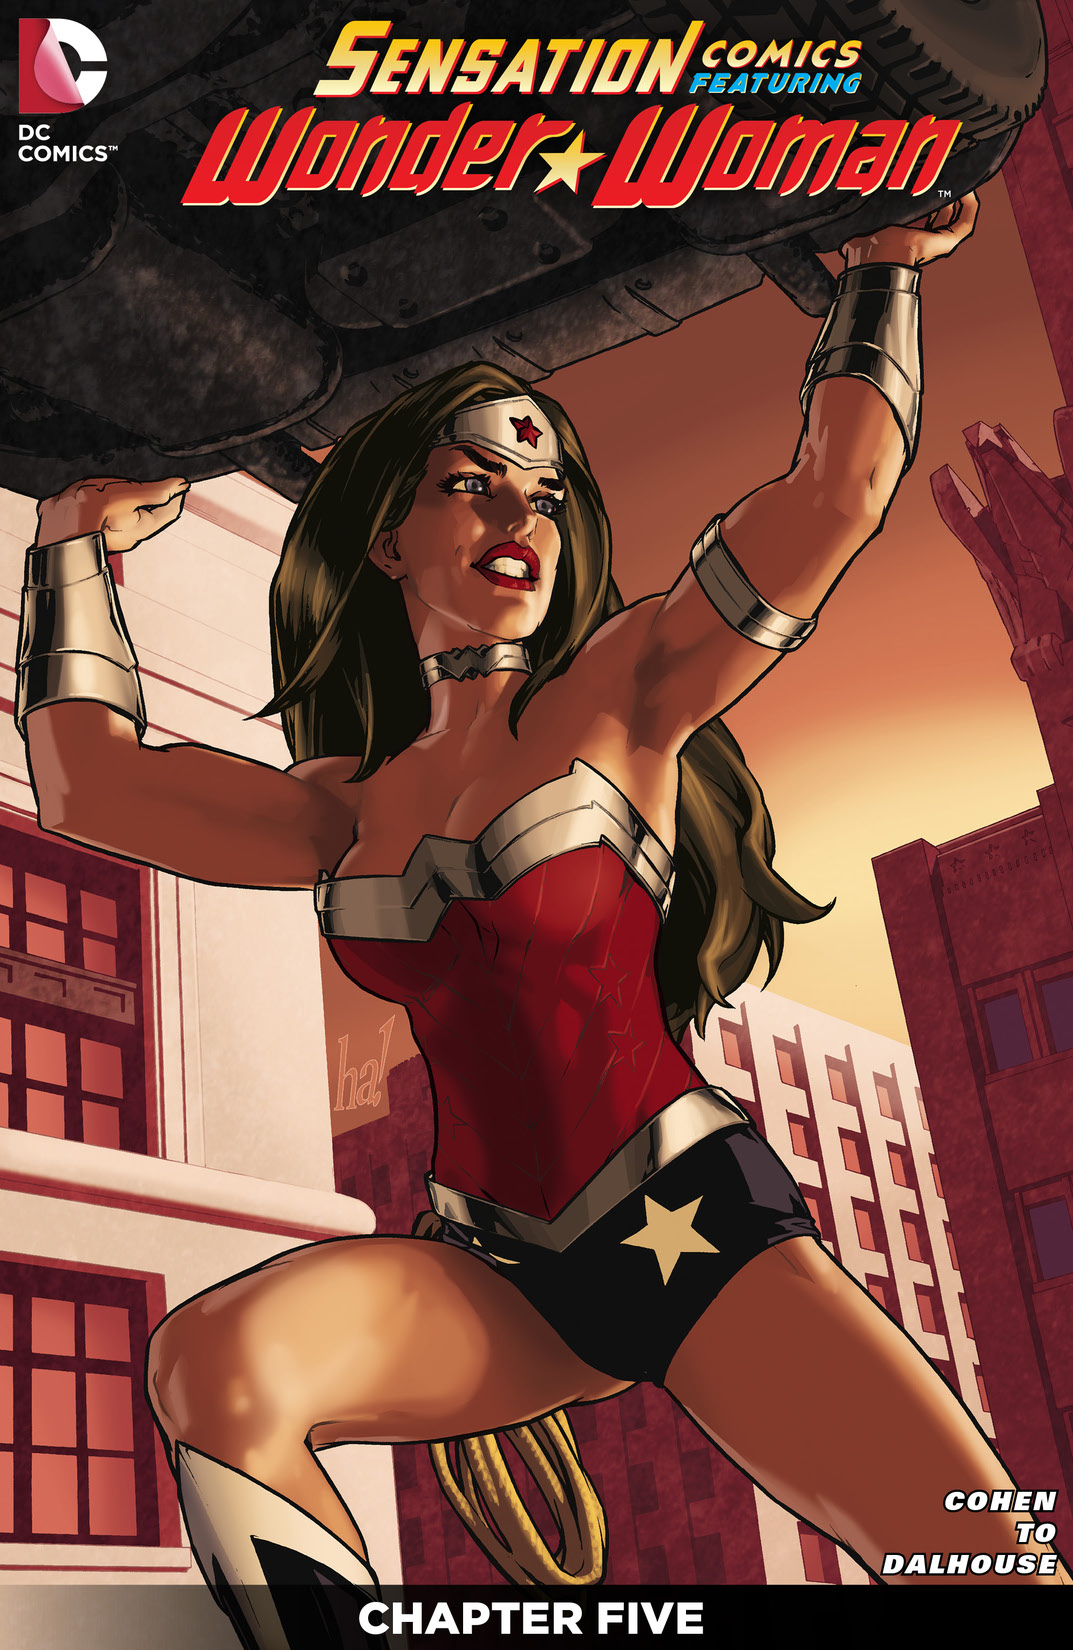 Sensation Comics Featuring Wonder Woman #5 preview images